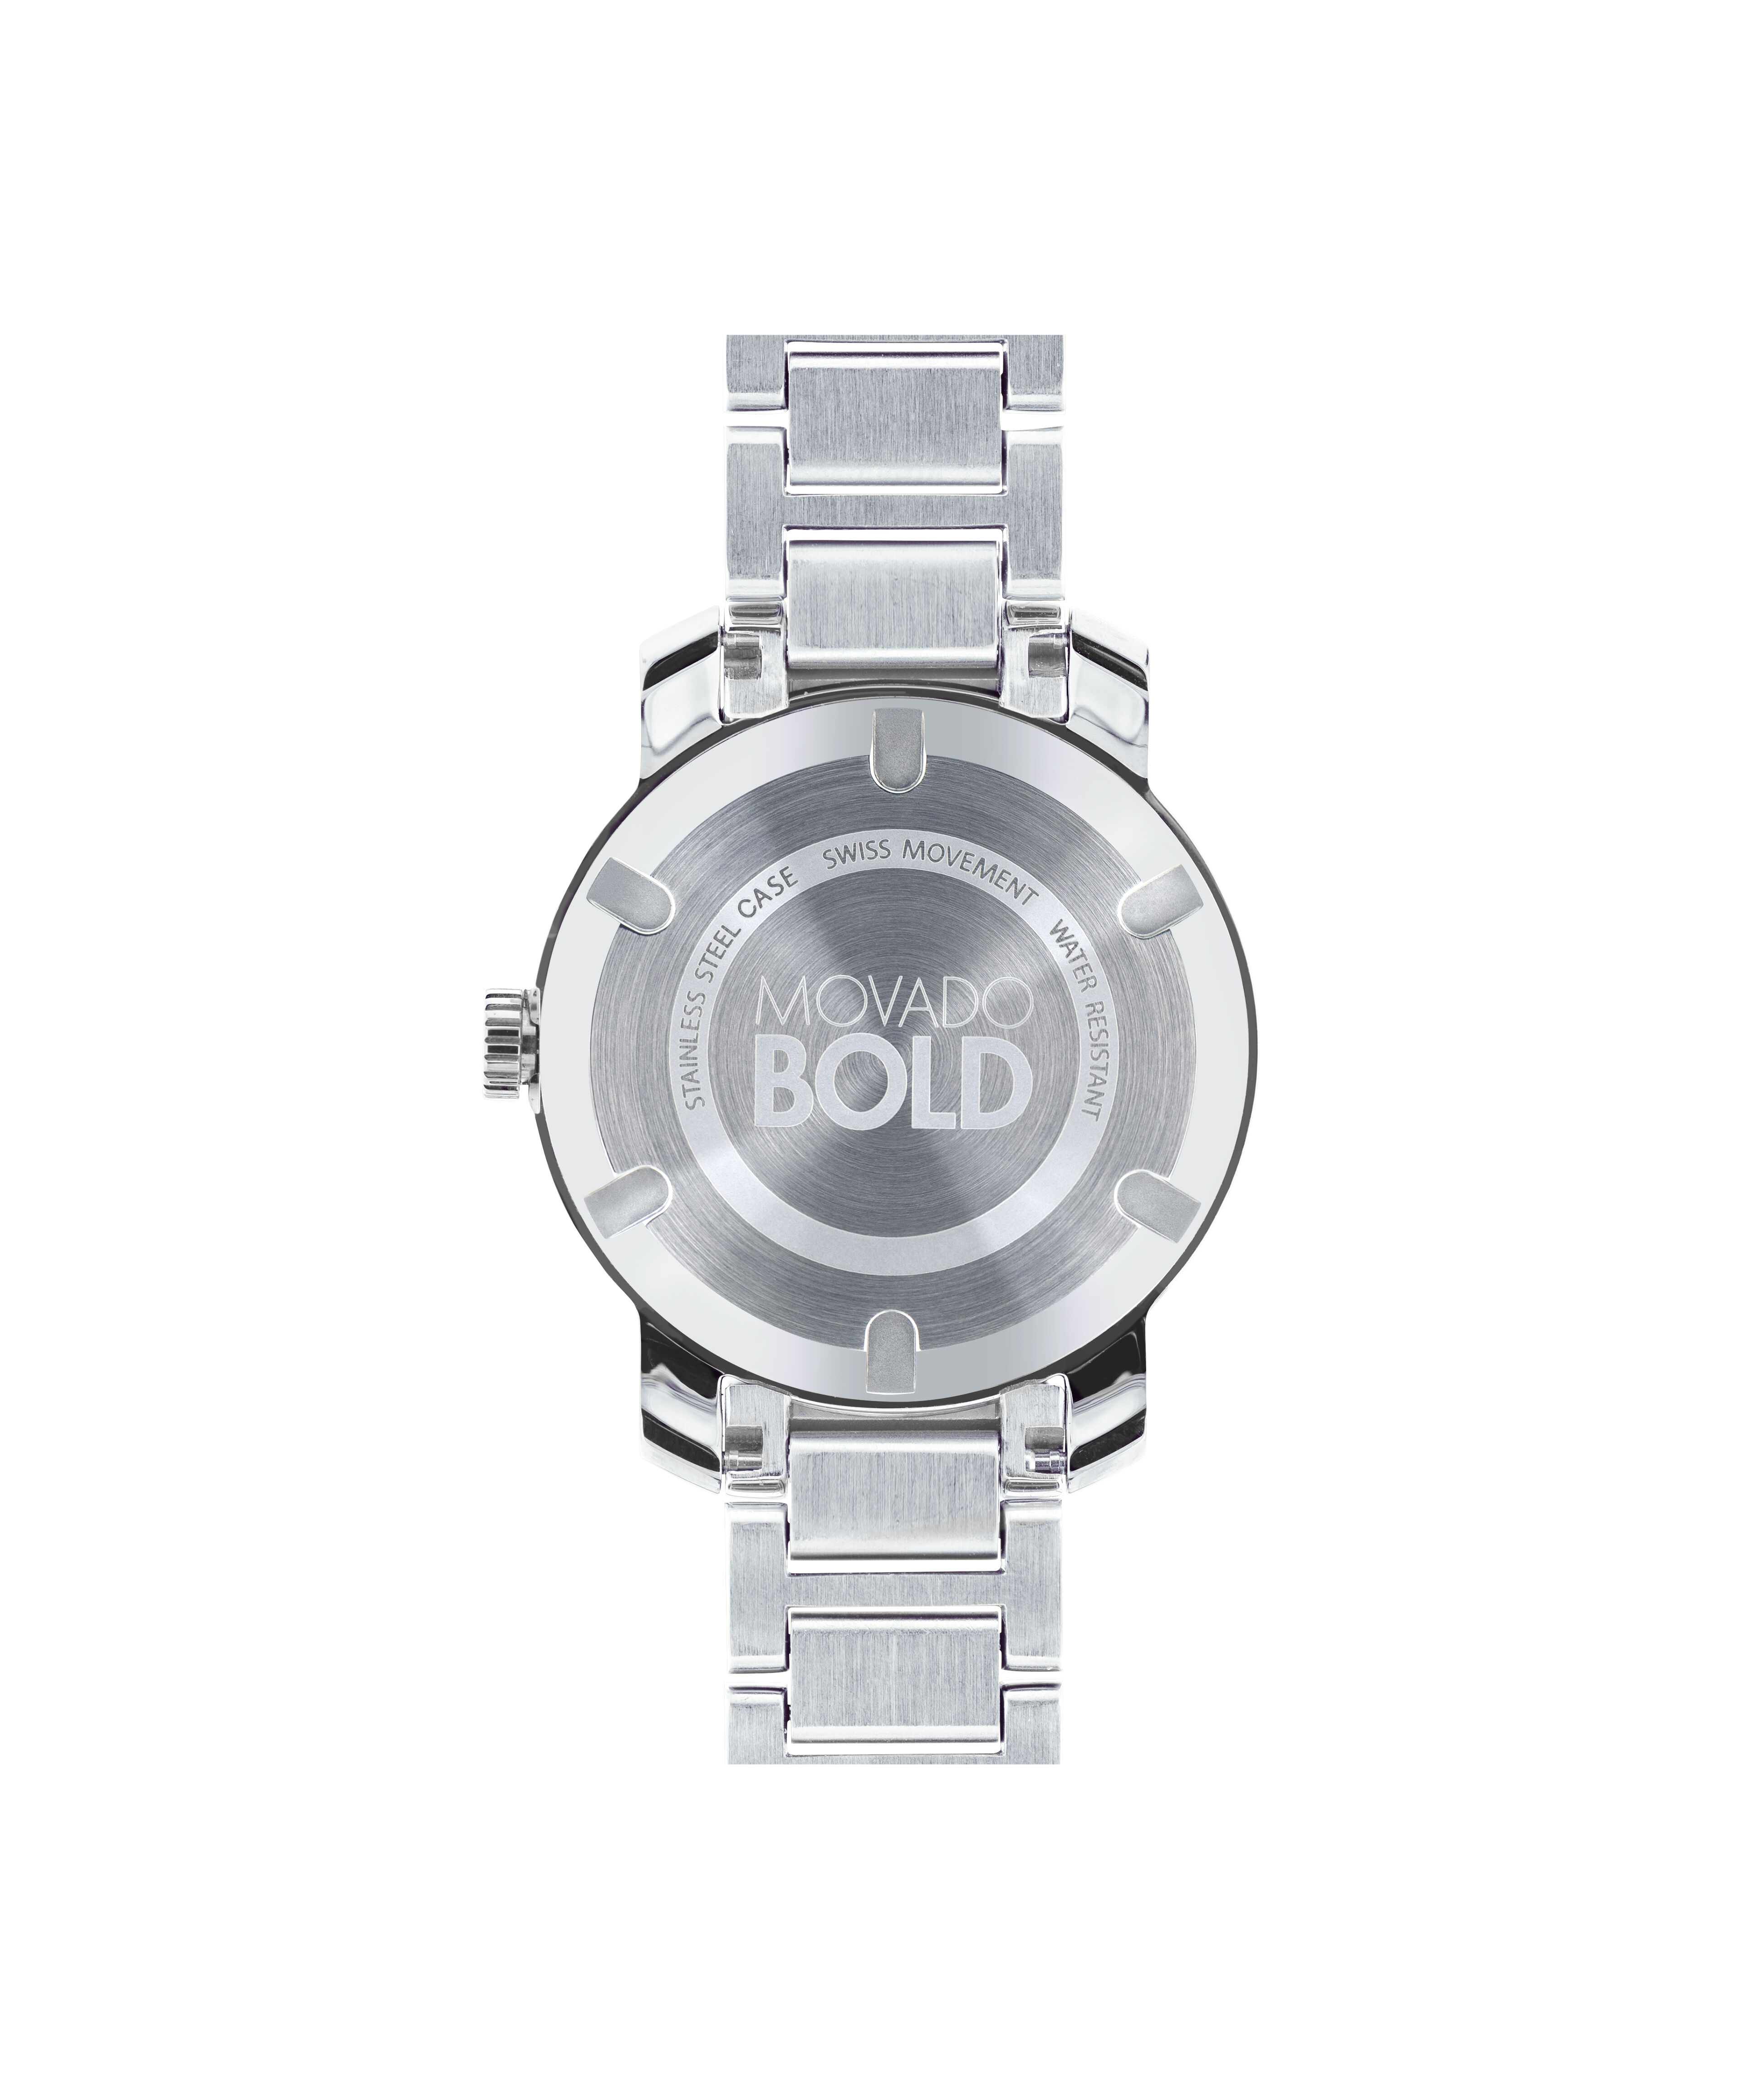 rolex replica watches under $50